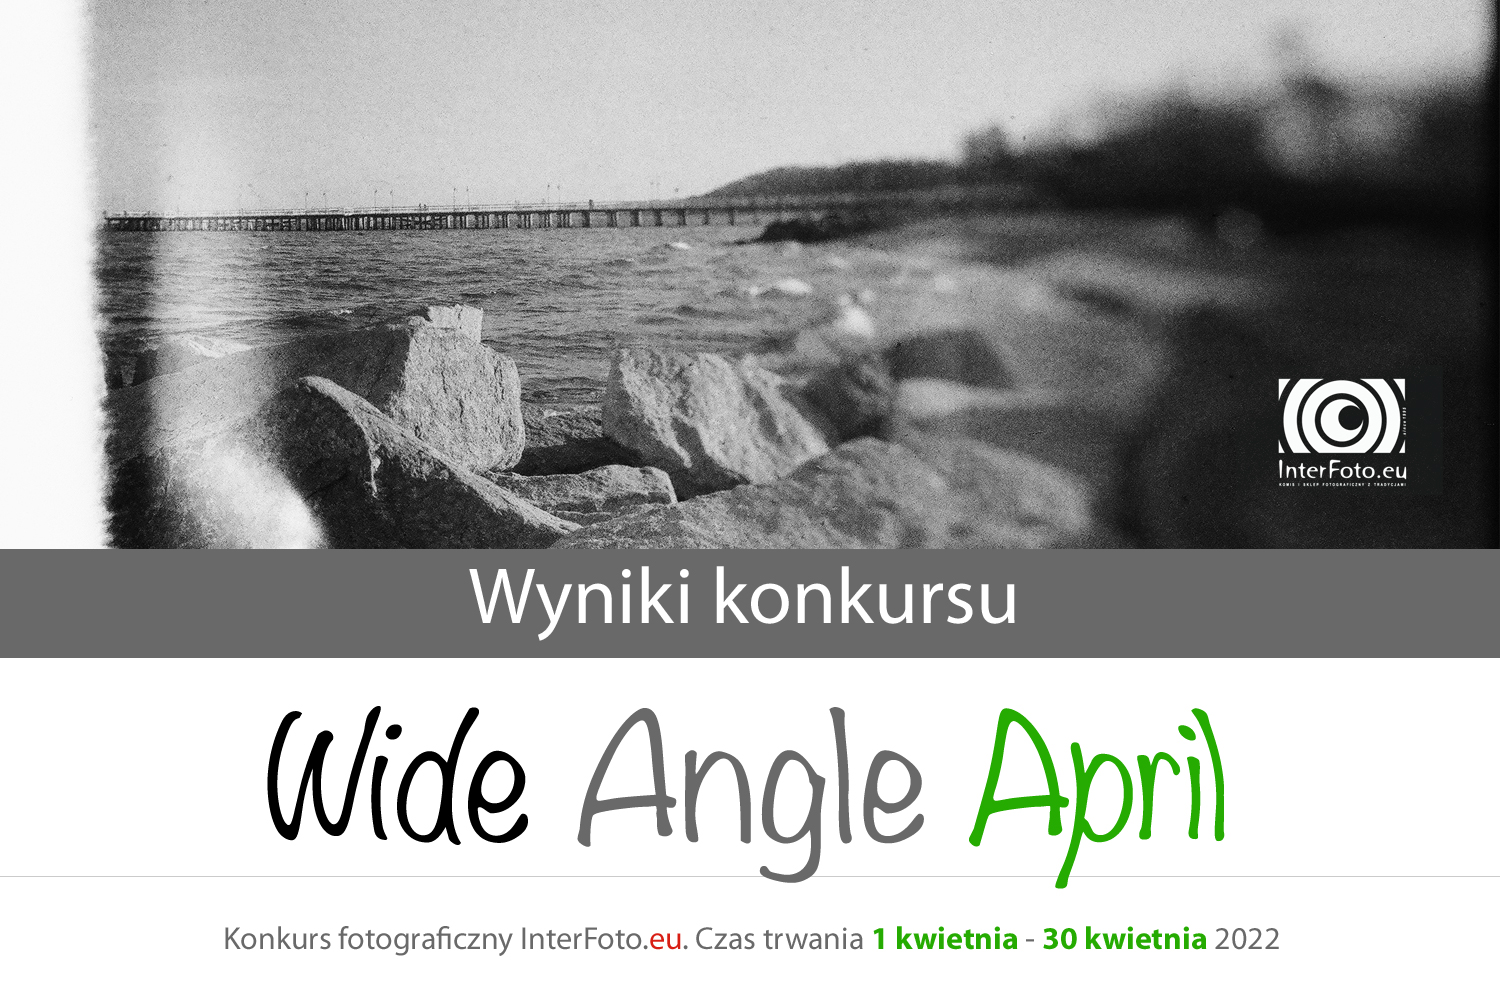 Wyniki i podsumowanie konkursu „Wide Angle April” 1-30 kwietnia 2022